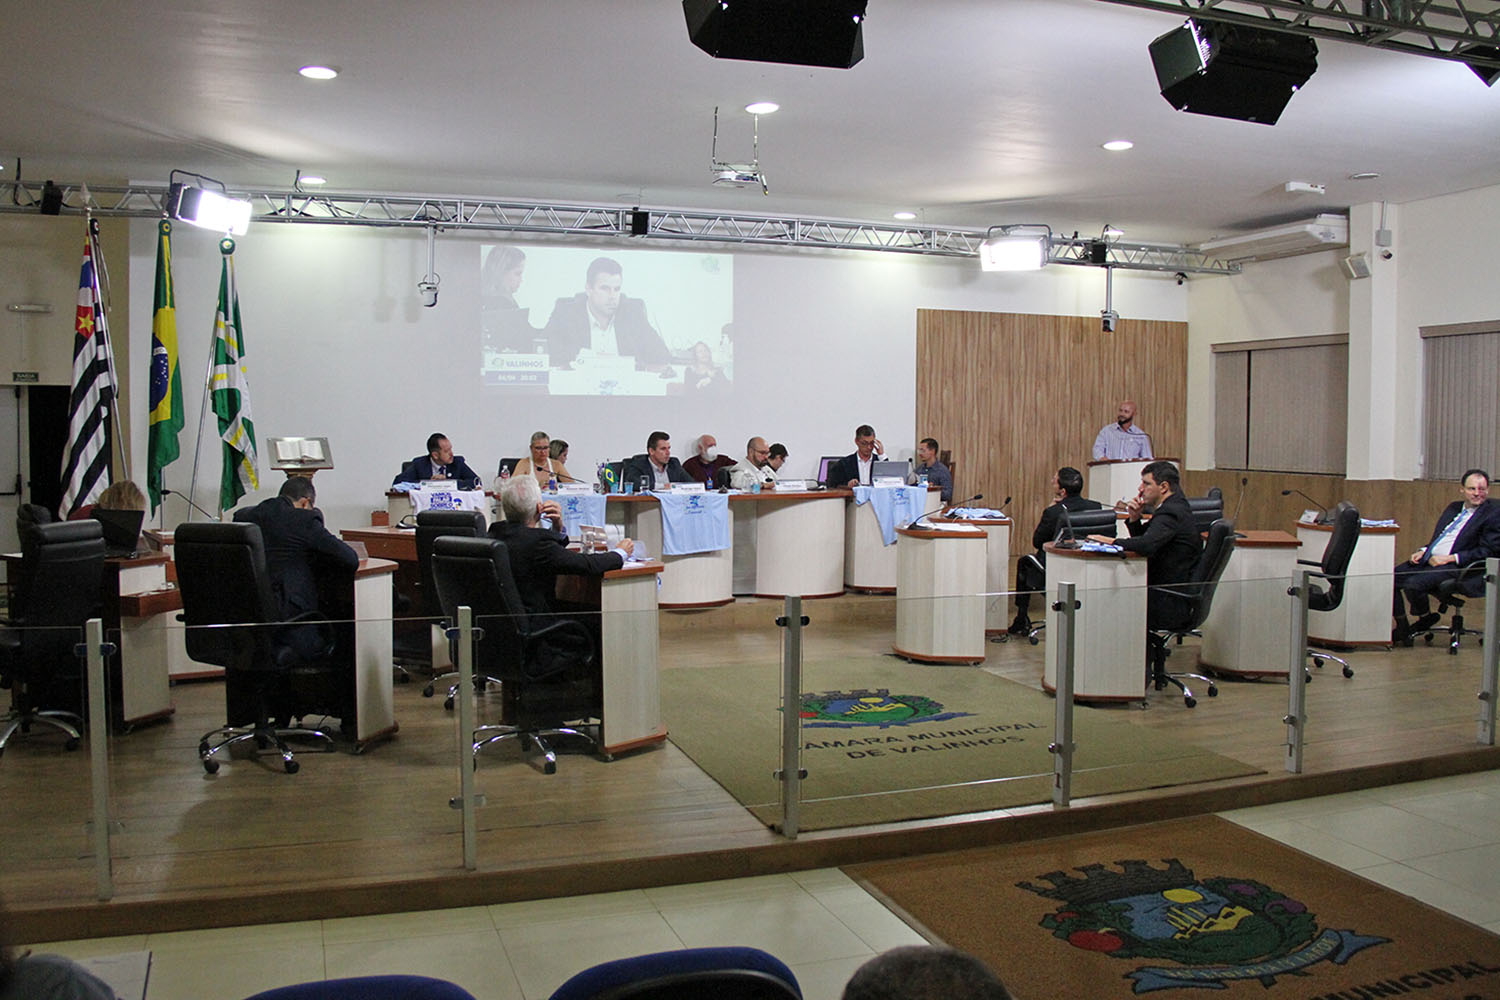 #PraCegoVer: foto mostra o plenário da Câmara, com os vereadores sentados em seus lugares.